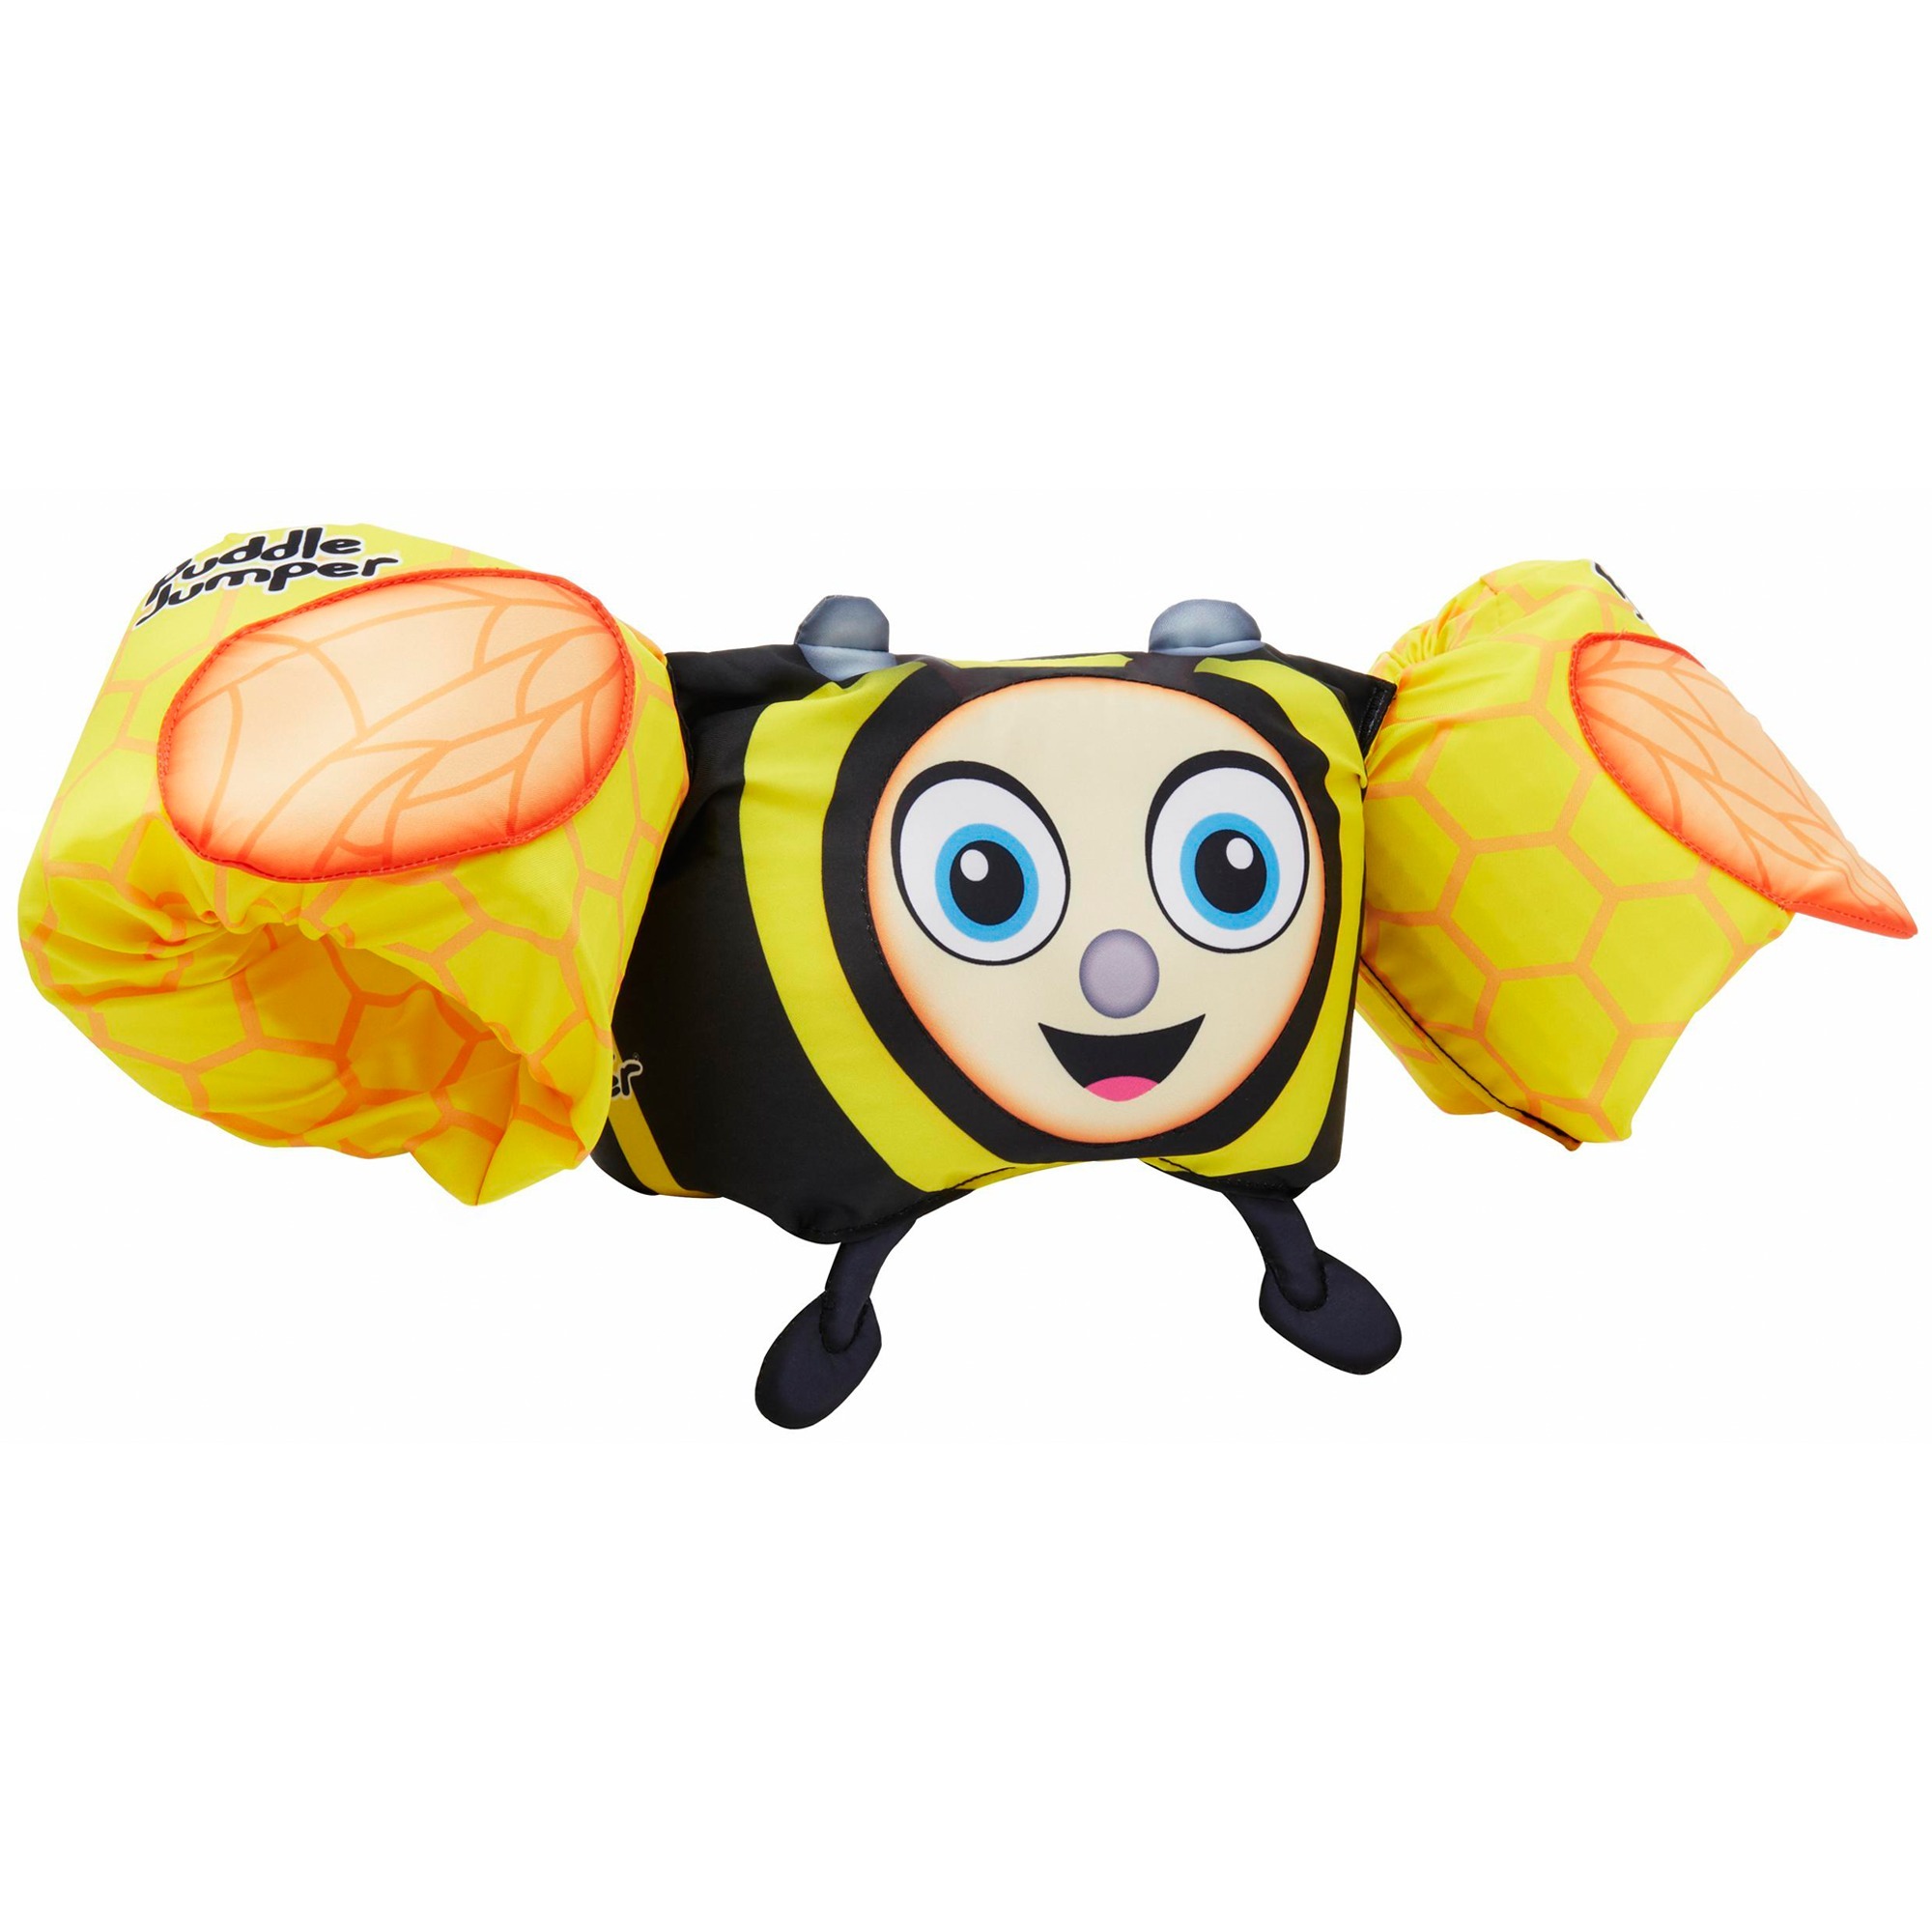 Image of Alternate - Puddle Jumper 3D Biene, Schwimmflügel online einkaufen bei Alternate